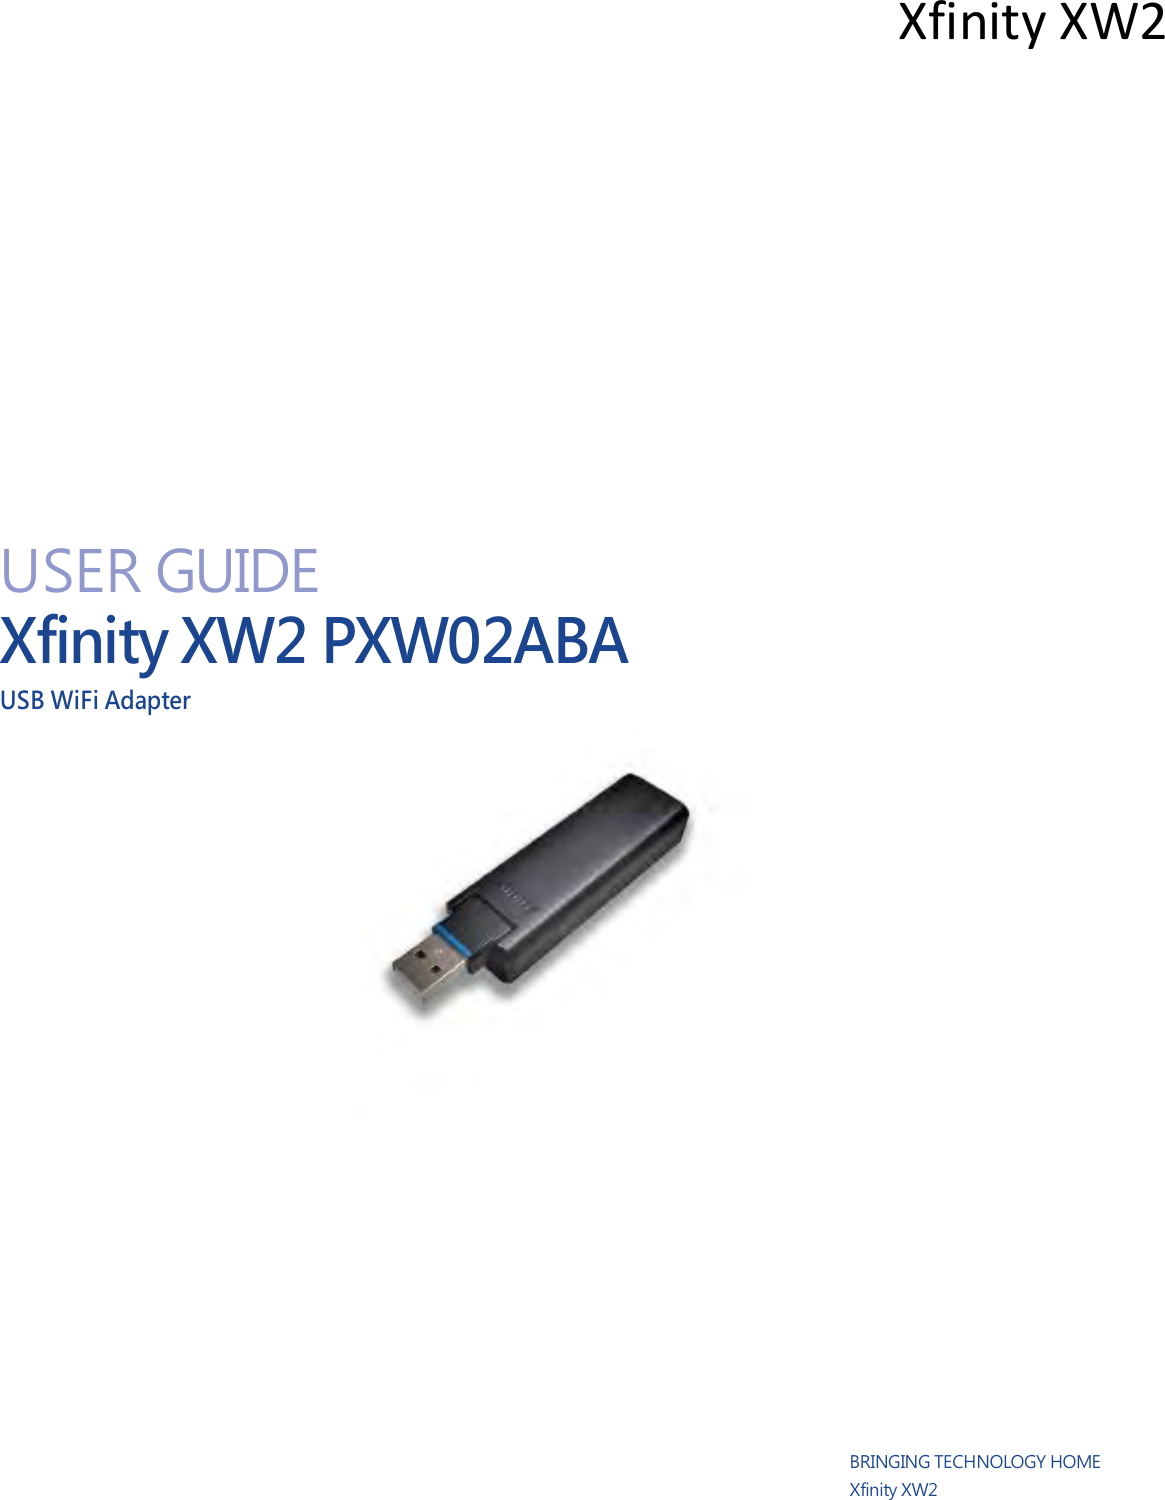   Xfinity XW2                    USER GUIDE Xfinity XW2 PXW02ABA USB WiFi Adapter                               BRINGING TECHNOLOGY HOME Xfinity XW2